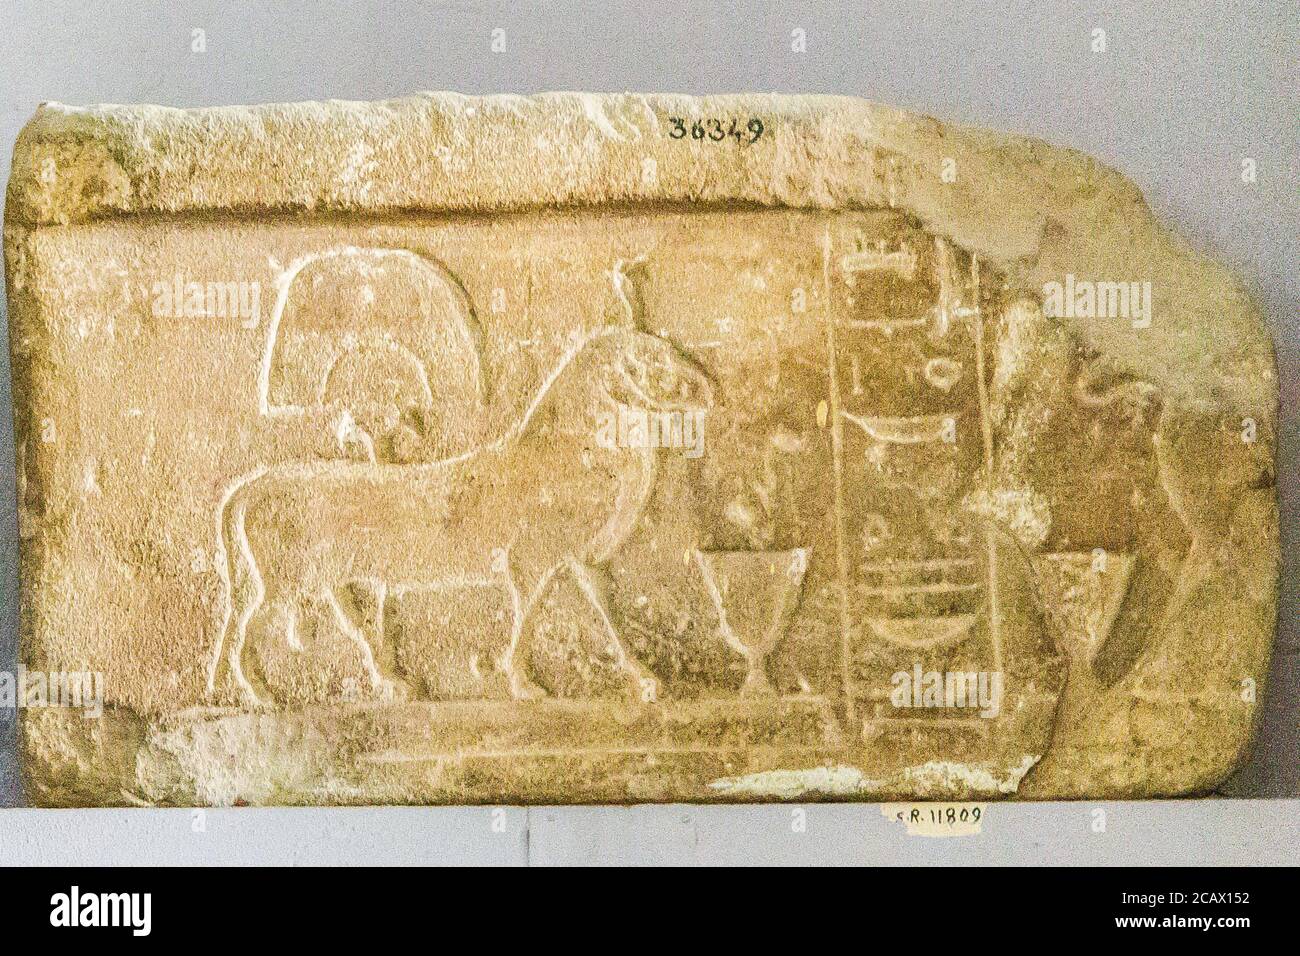 Égypte, le Caire, Musée égyptien, stela votive avec 2 béliers d'Amon, grès, de Karnak. Banque D'Images